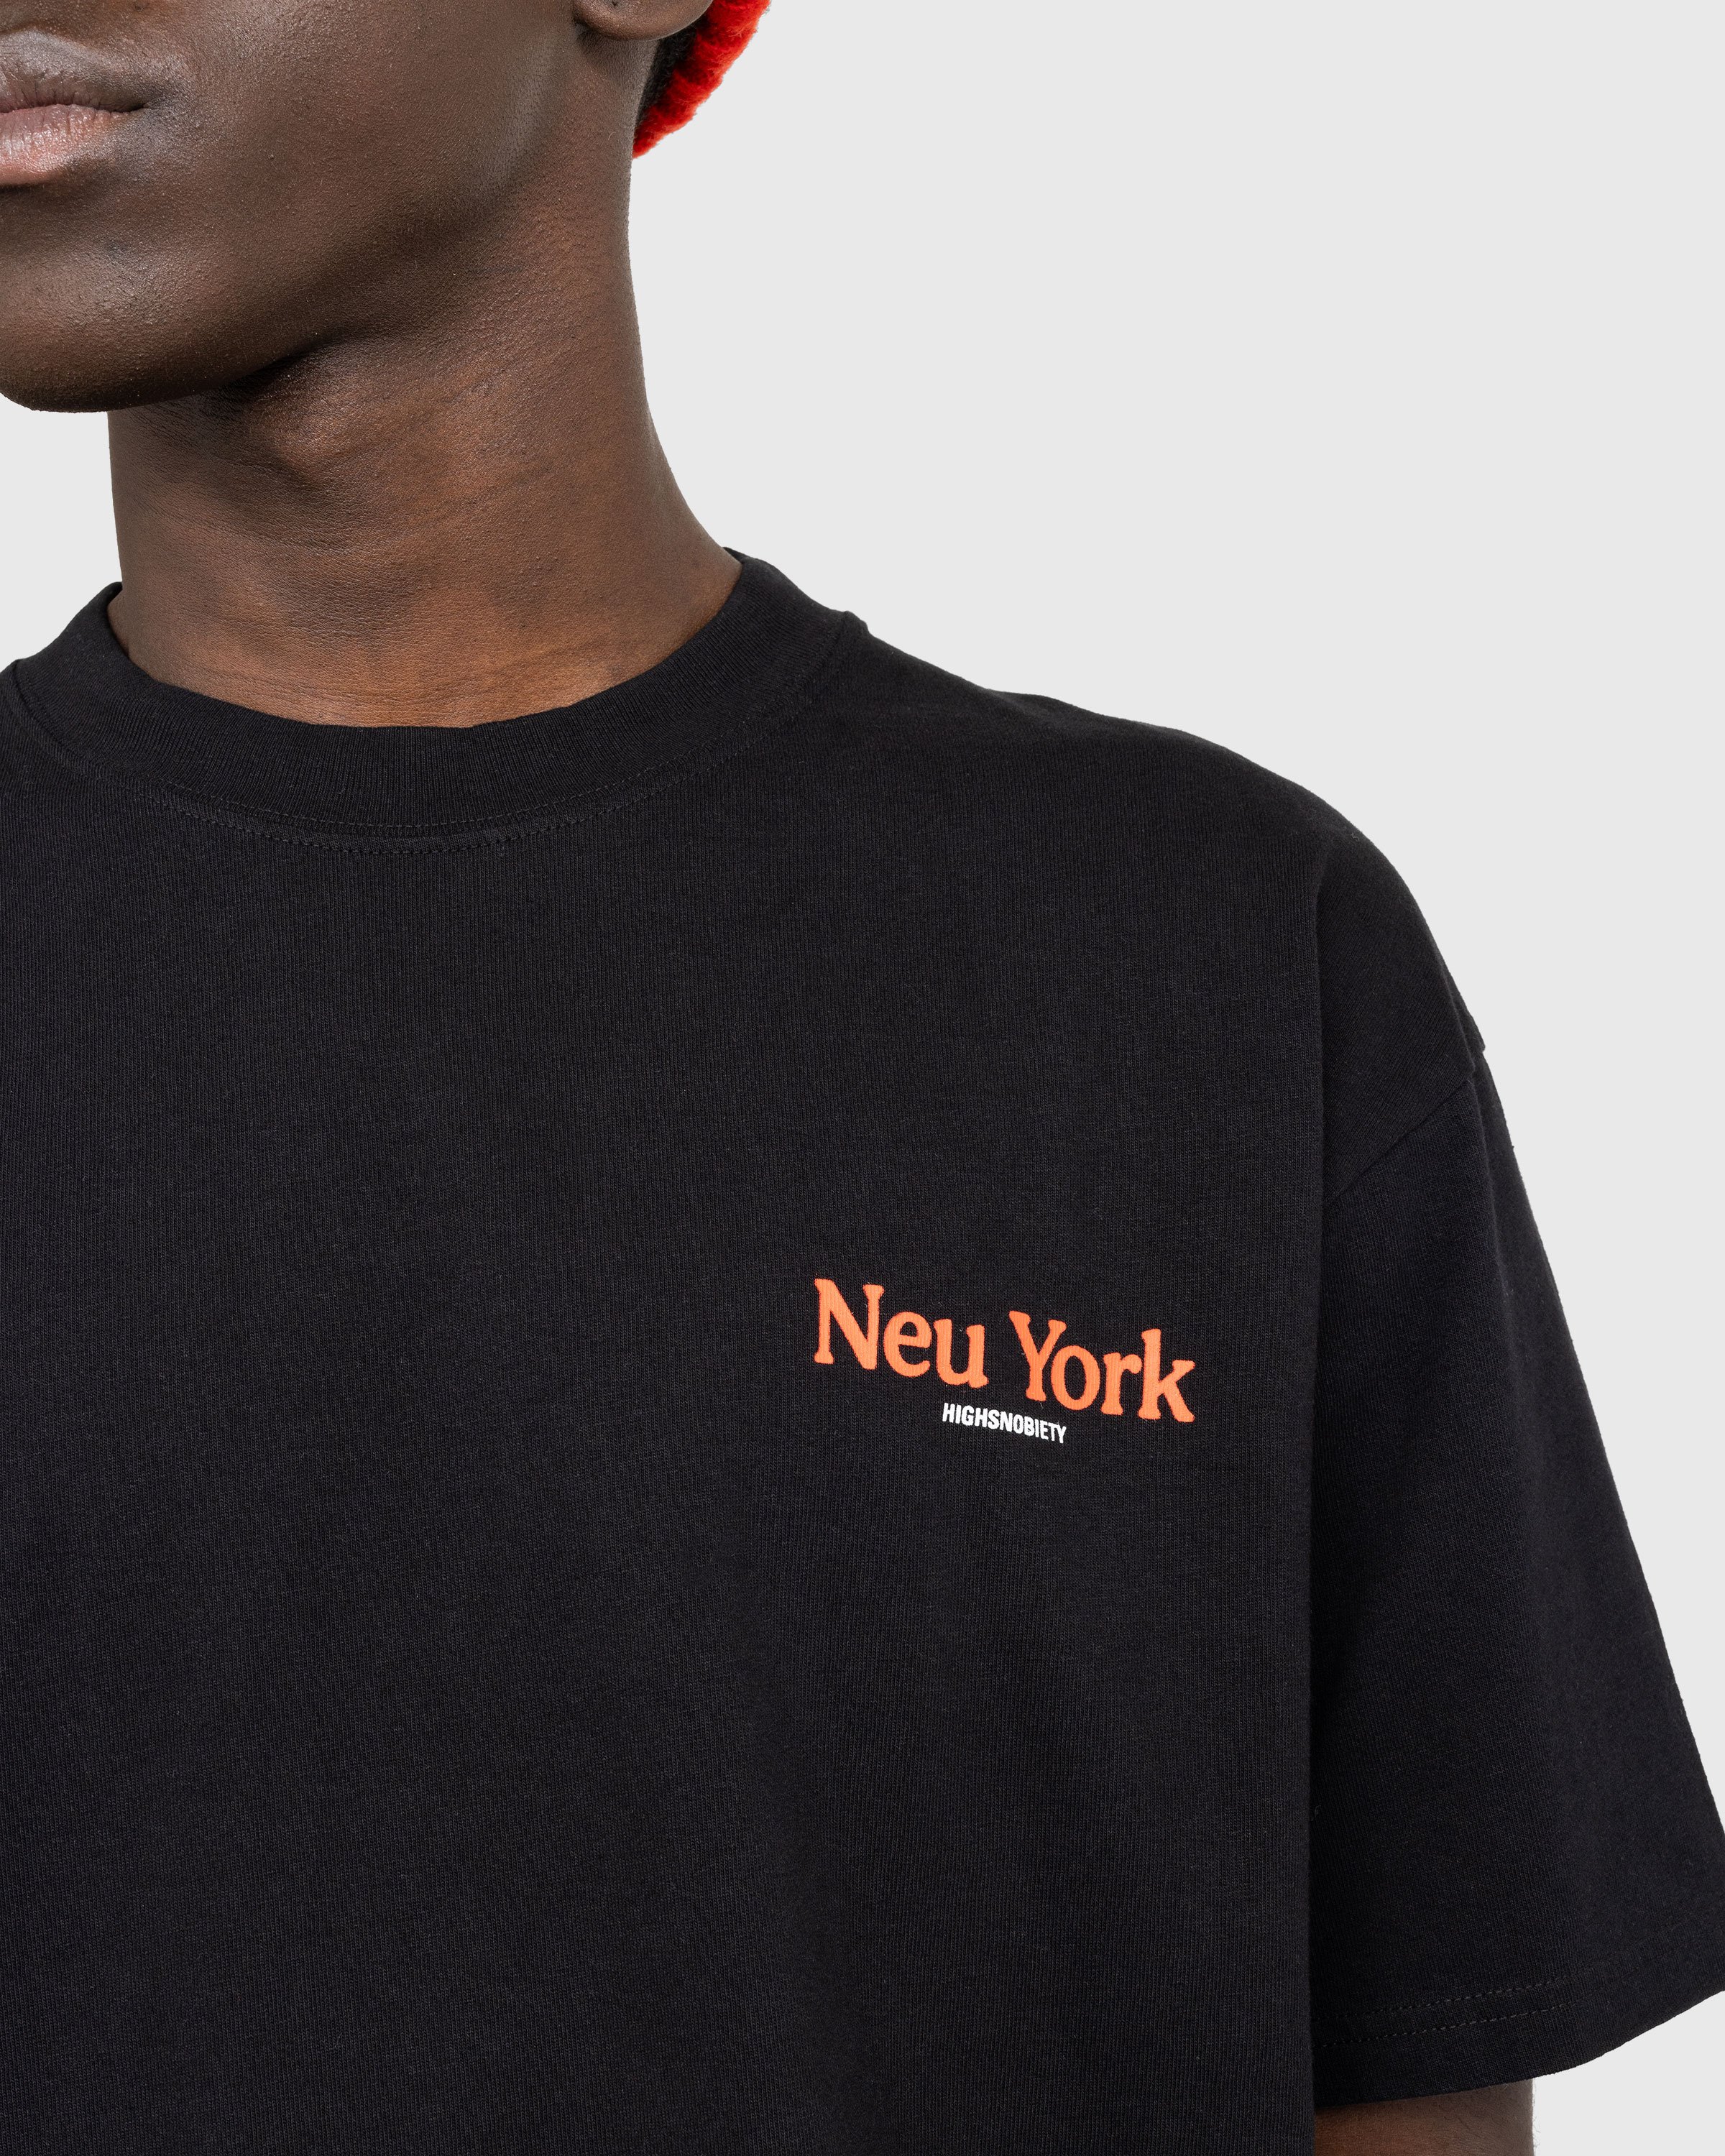 Highsnobiety - Neu York Black T-Shirt - Clothing - Black - Image 5